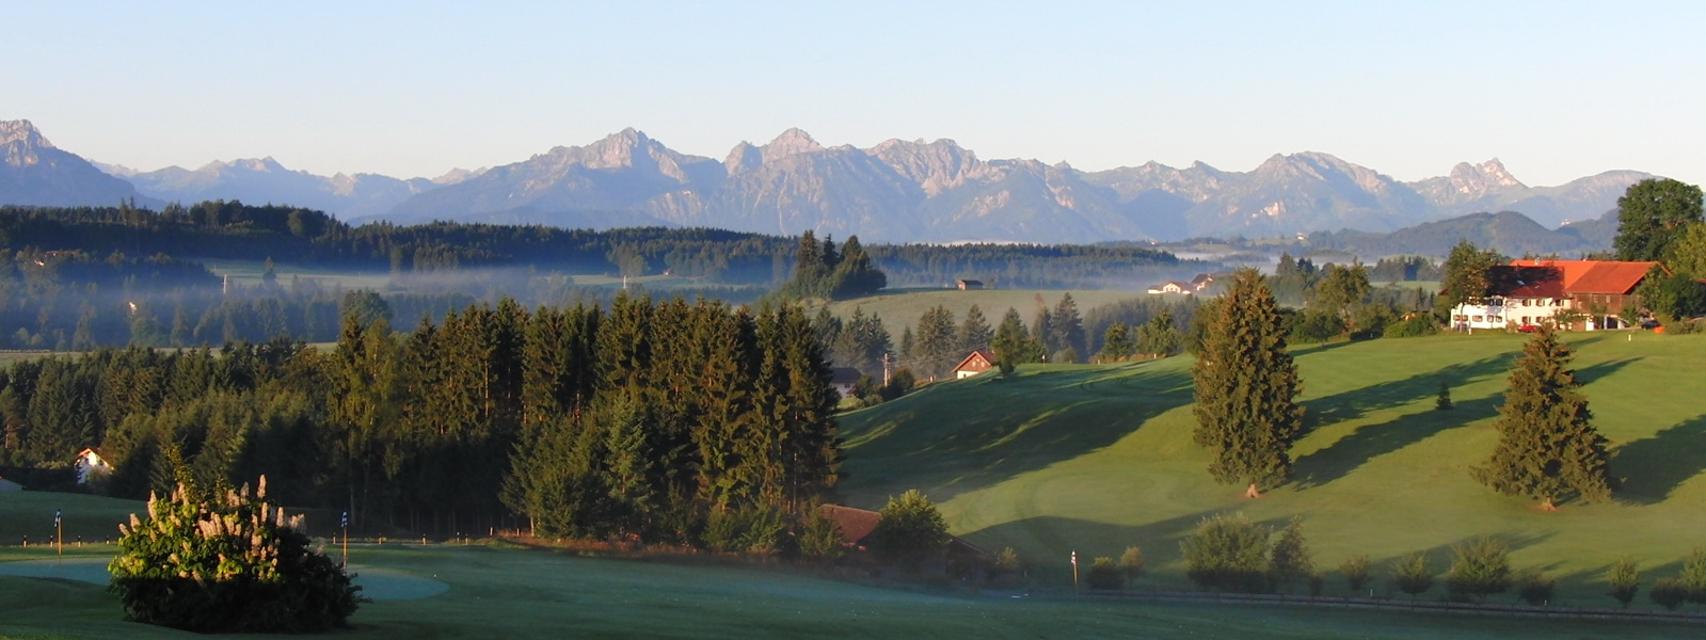 Der Betrachter blickt auf den Golfplatz und das Alpenpanorama am Horizont.